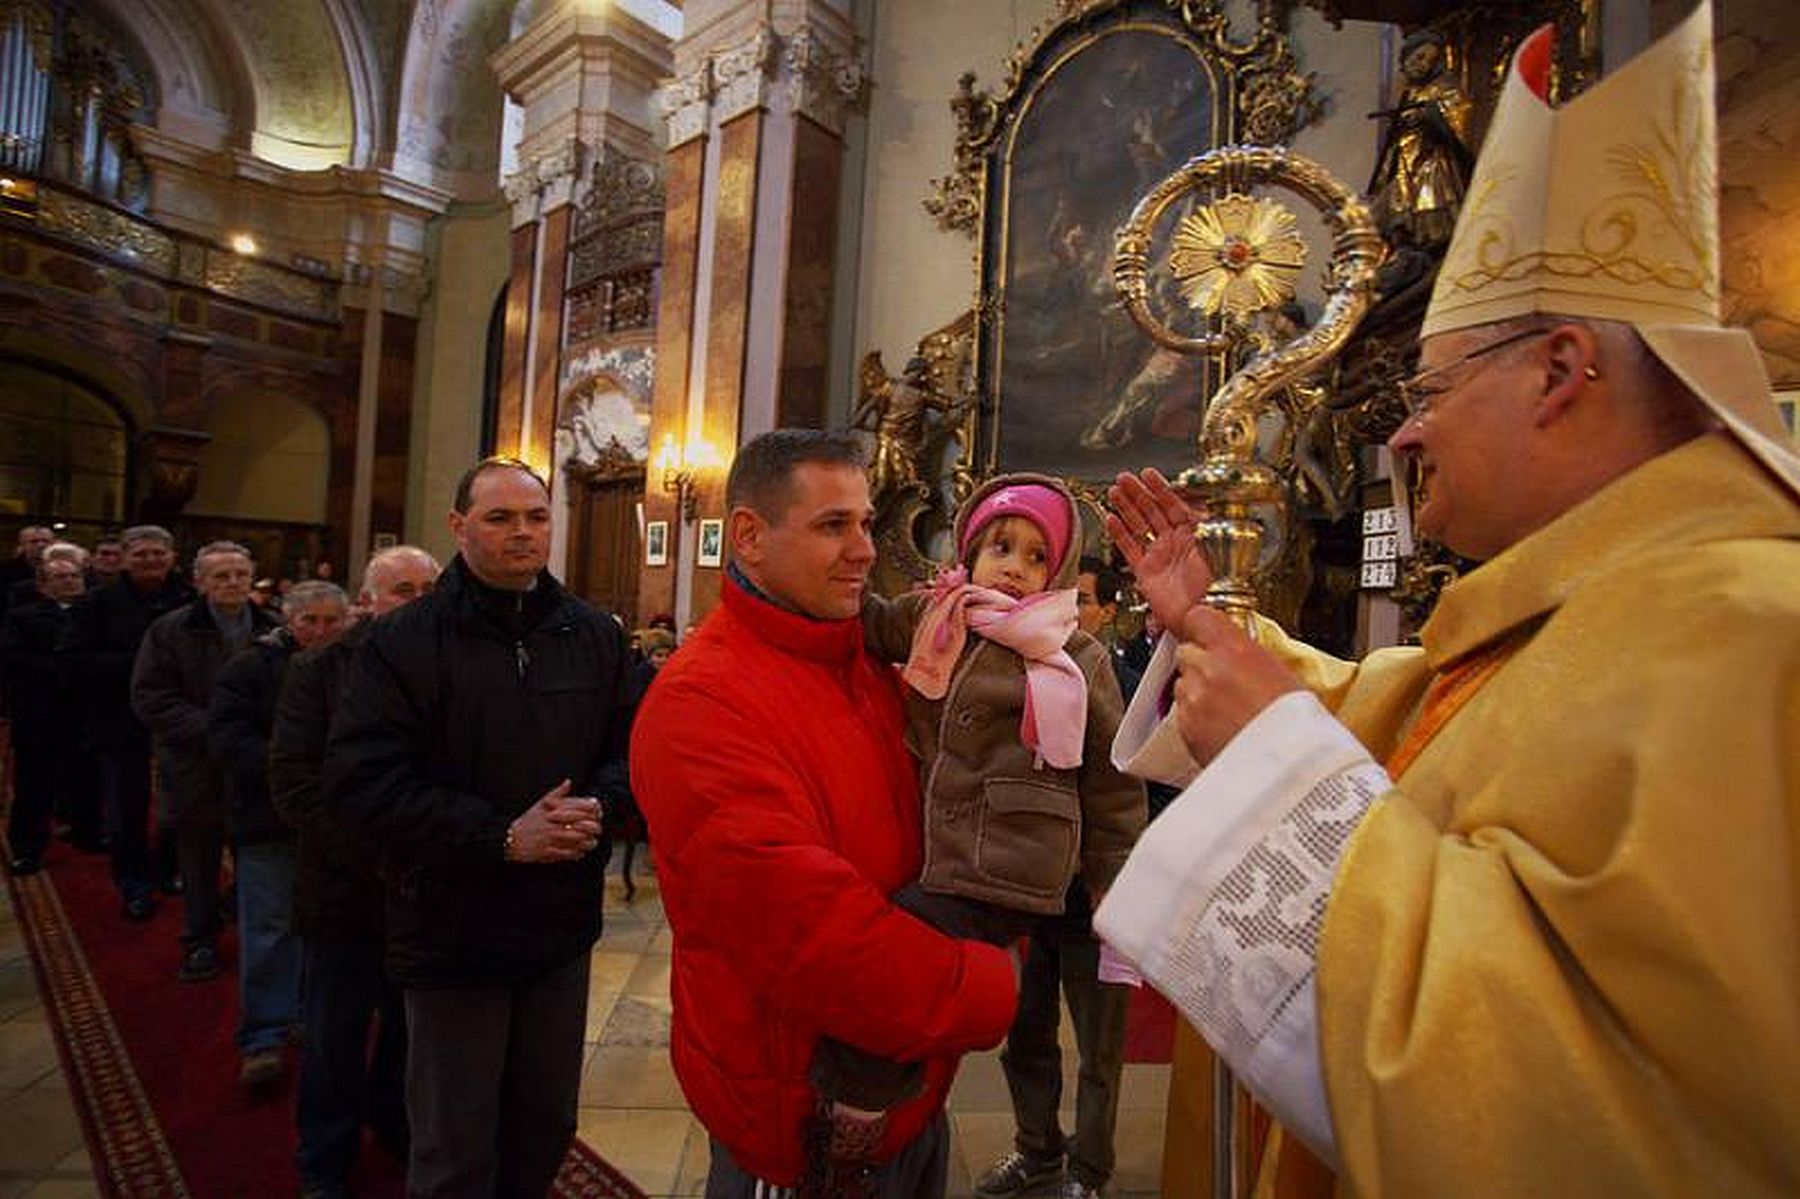 Püspöki áldást kapnak a fehérvári édesapák március 19-én, Szent József ünnepén